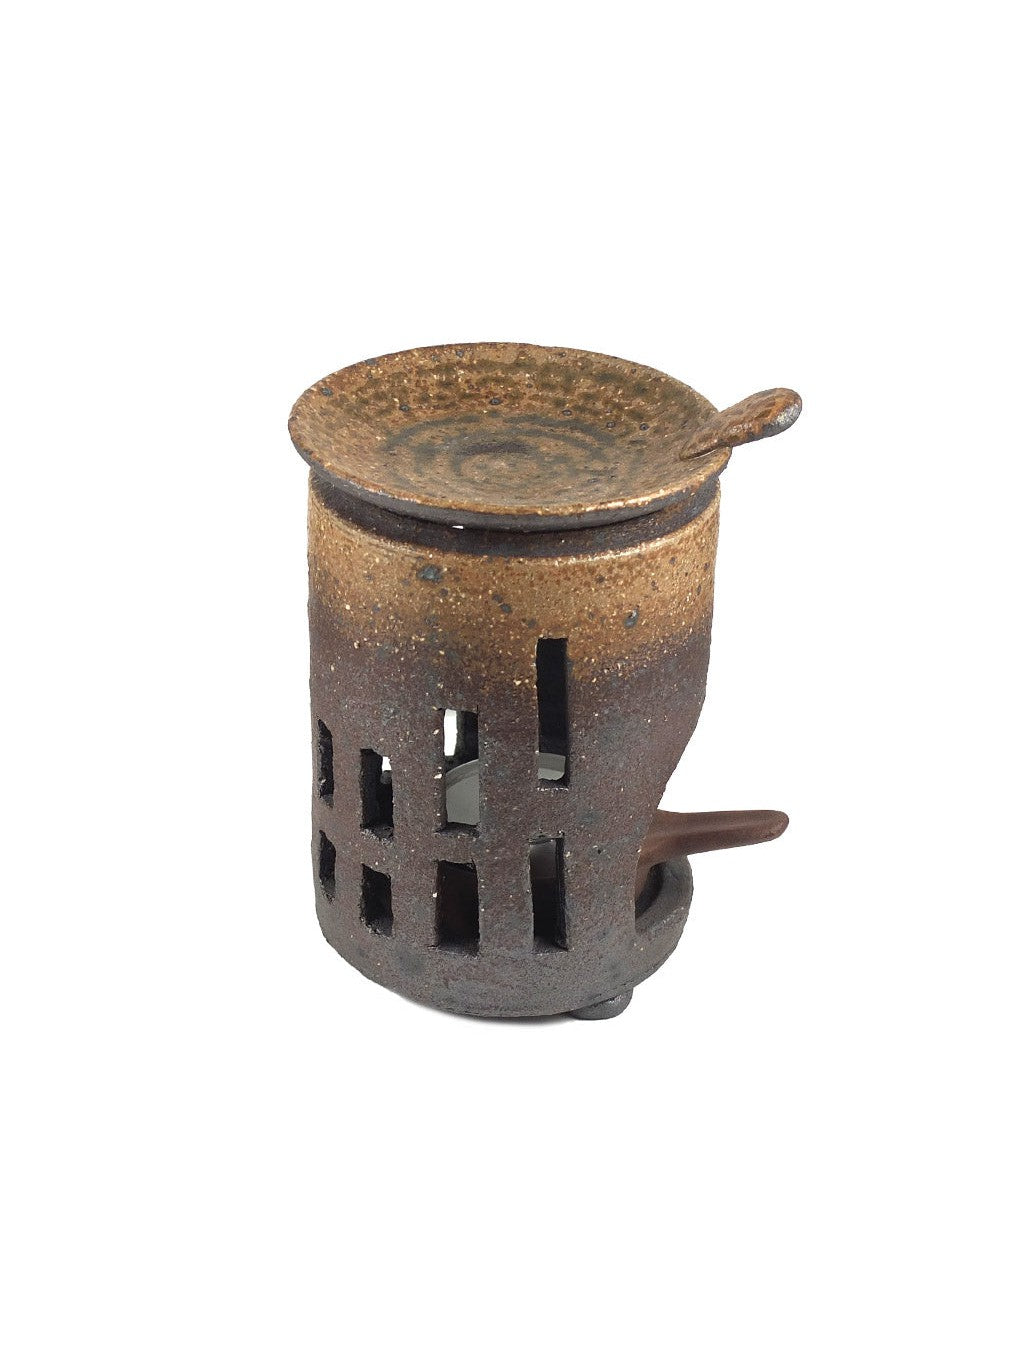 CHA KOURO NABAN / Tea burner